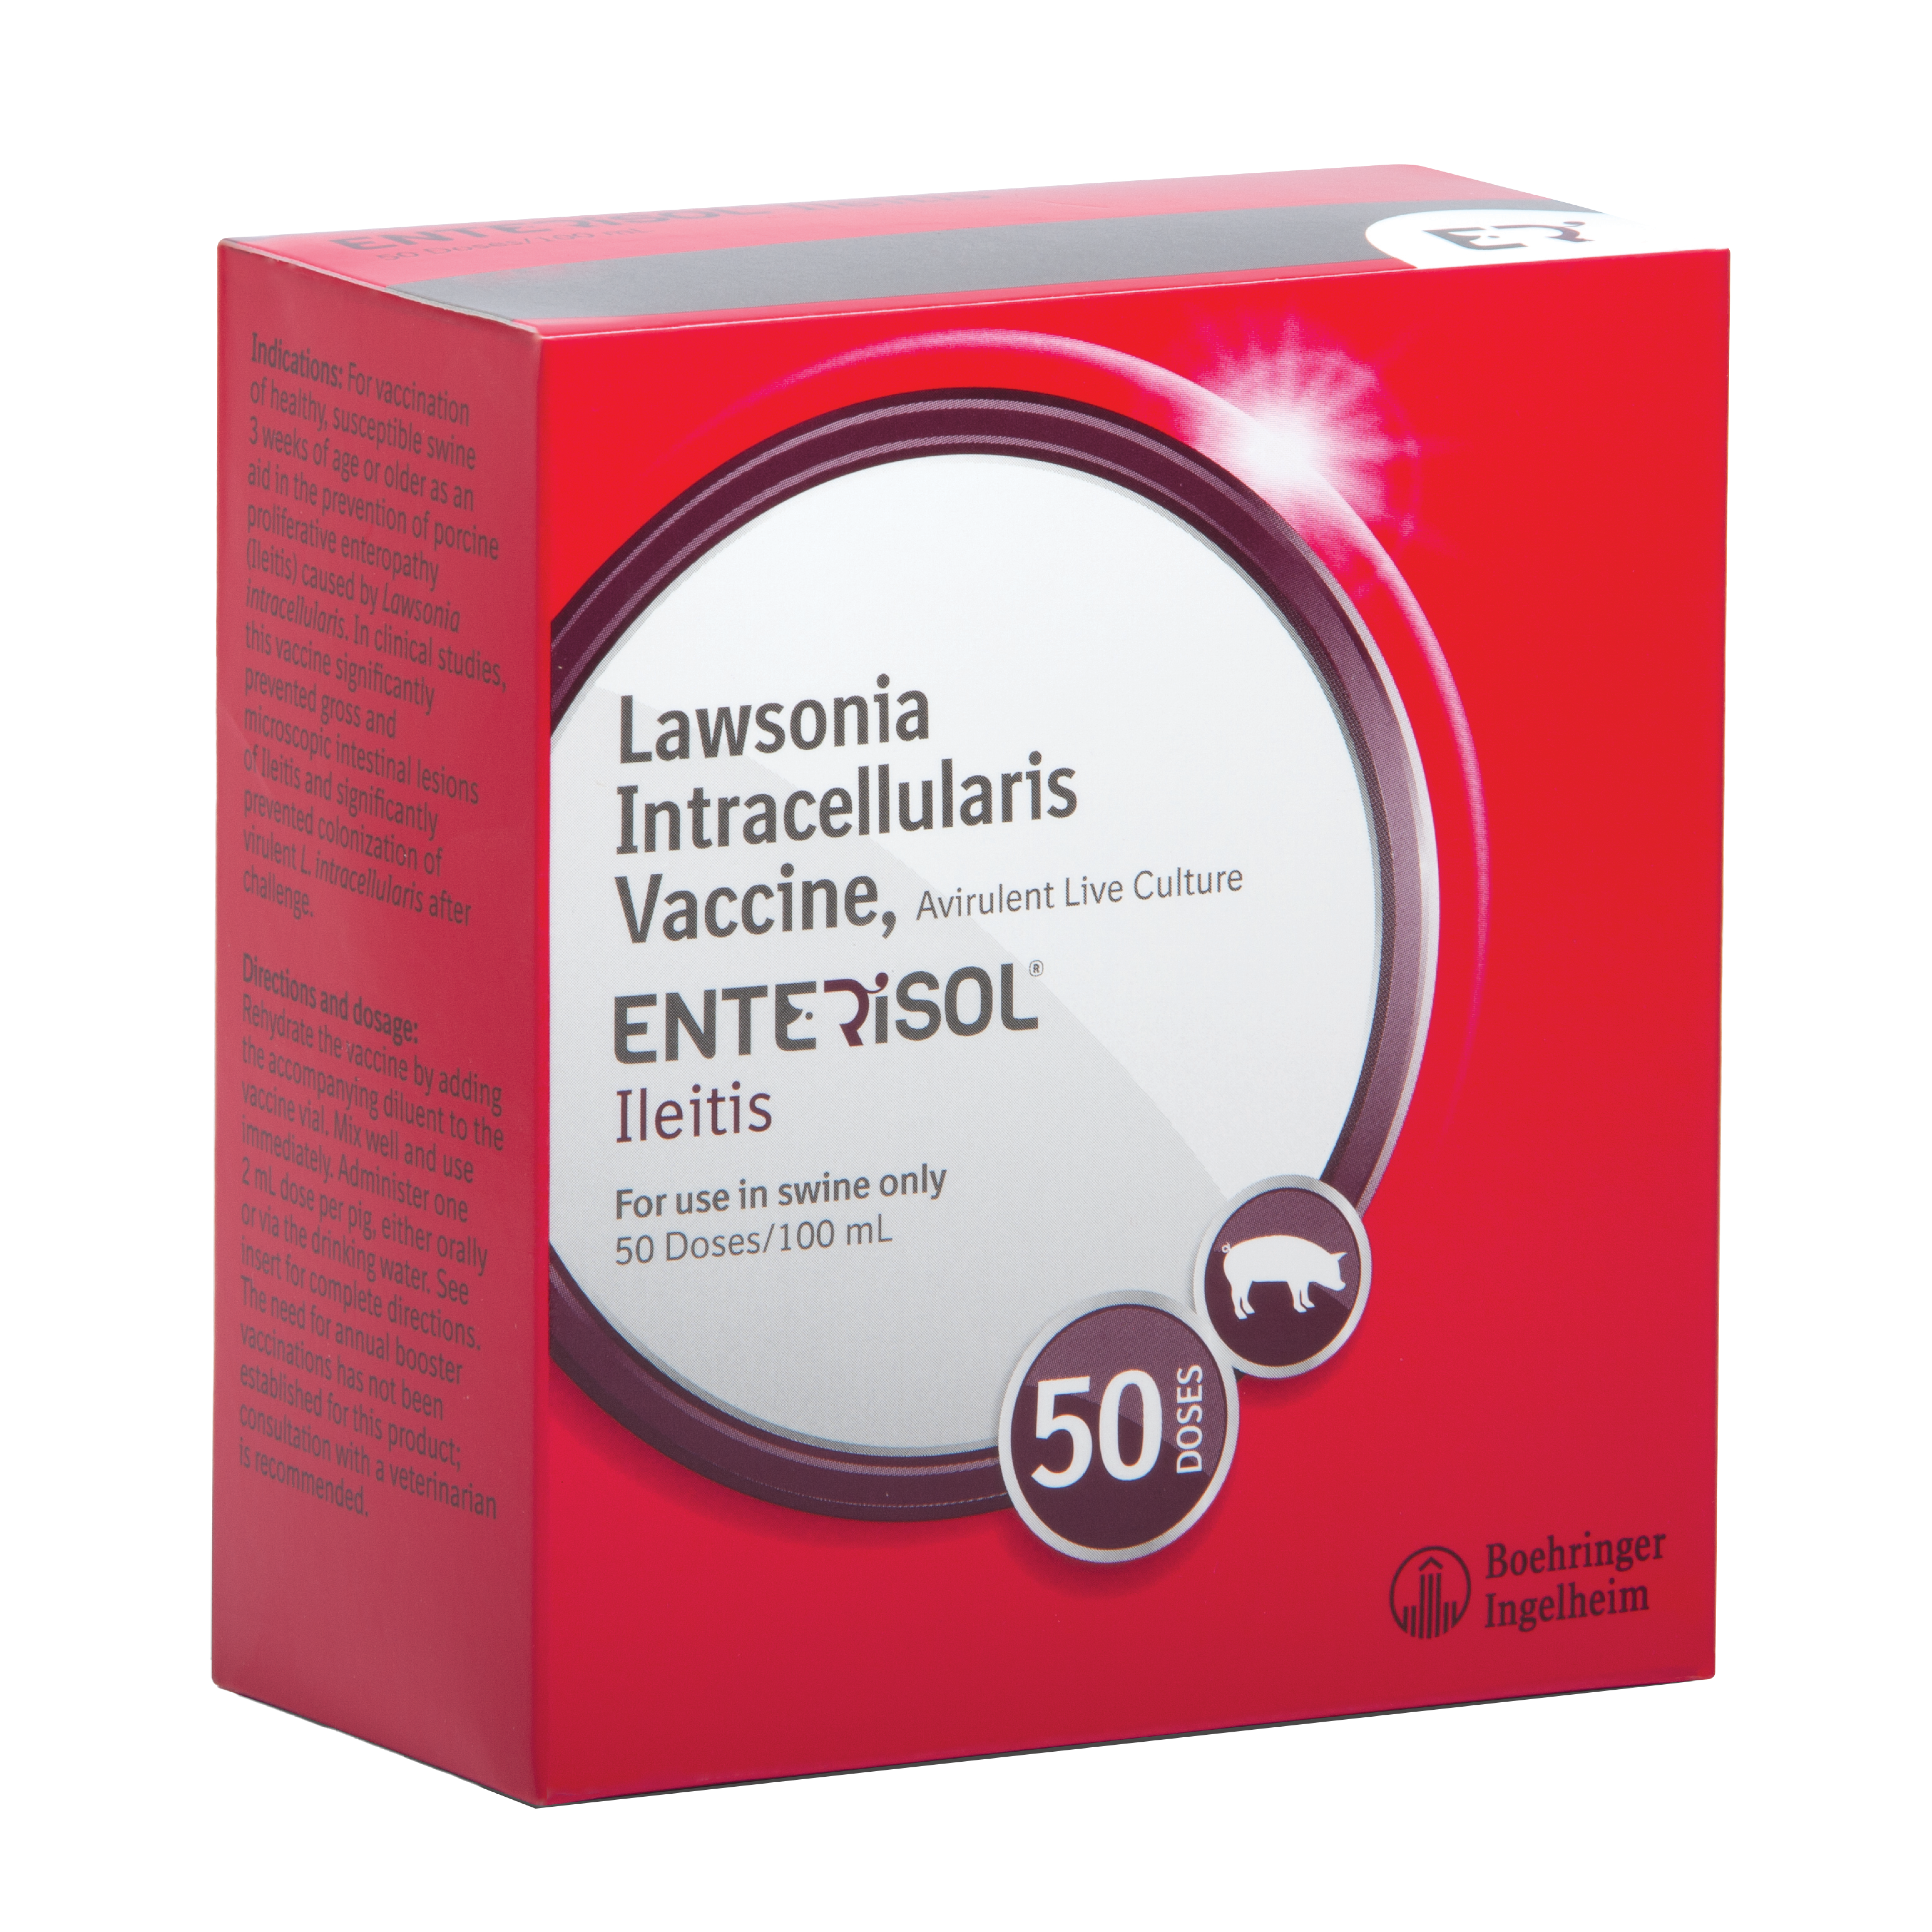 Enterisol Ileitis (Non-Frozen)